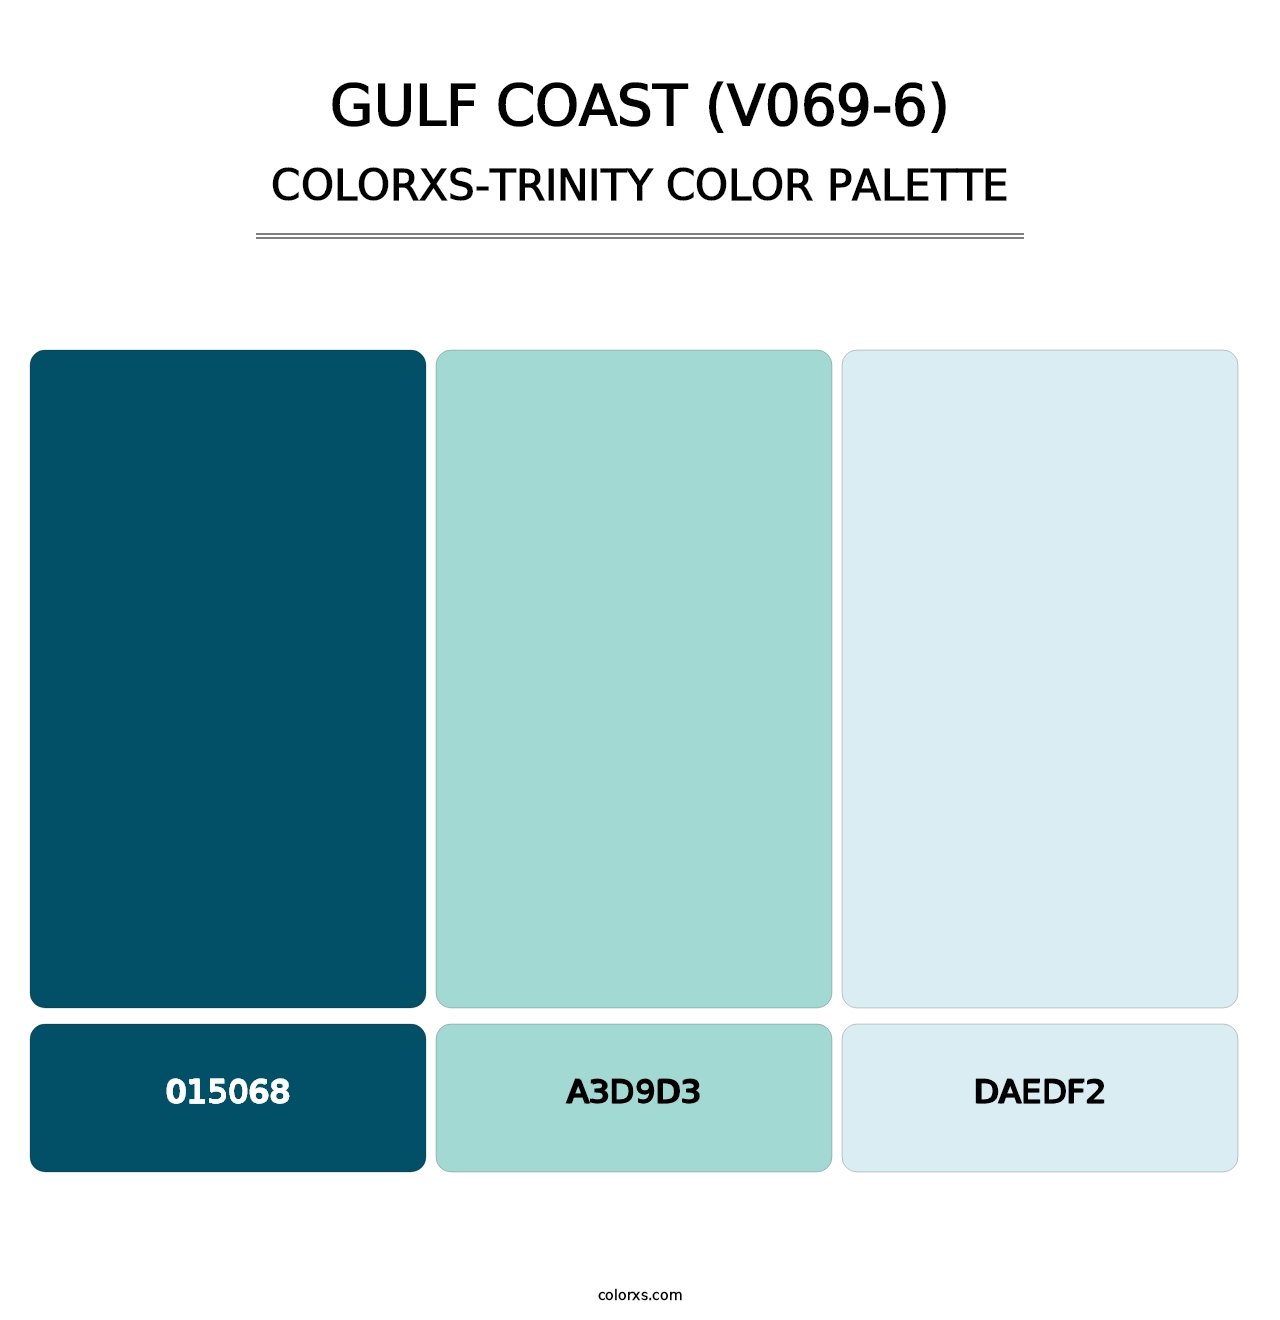 Gulf Coast (V069-6) - Colorxs Trinity Palette